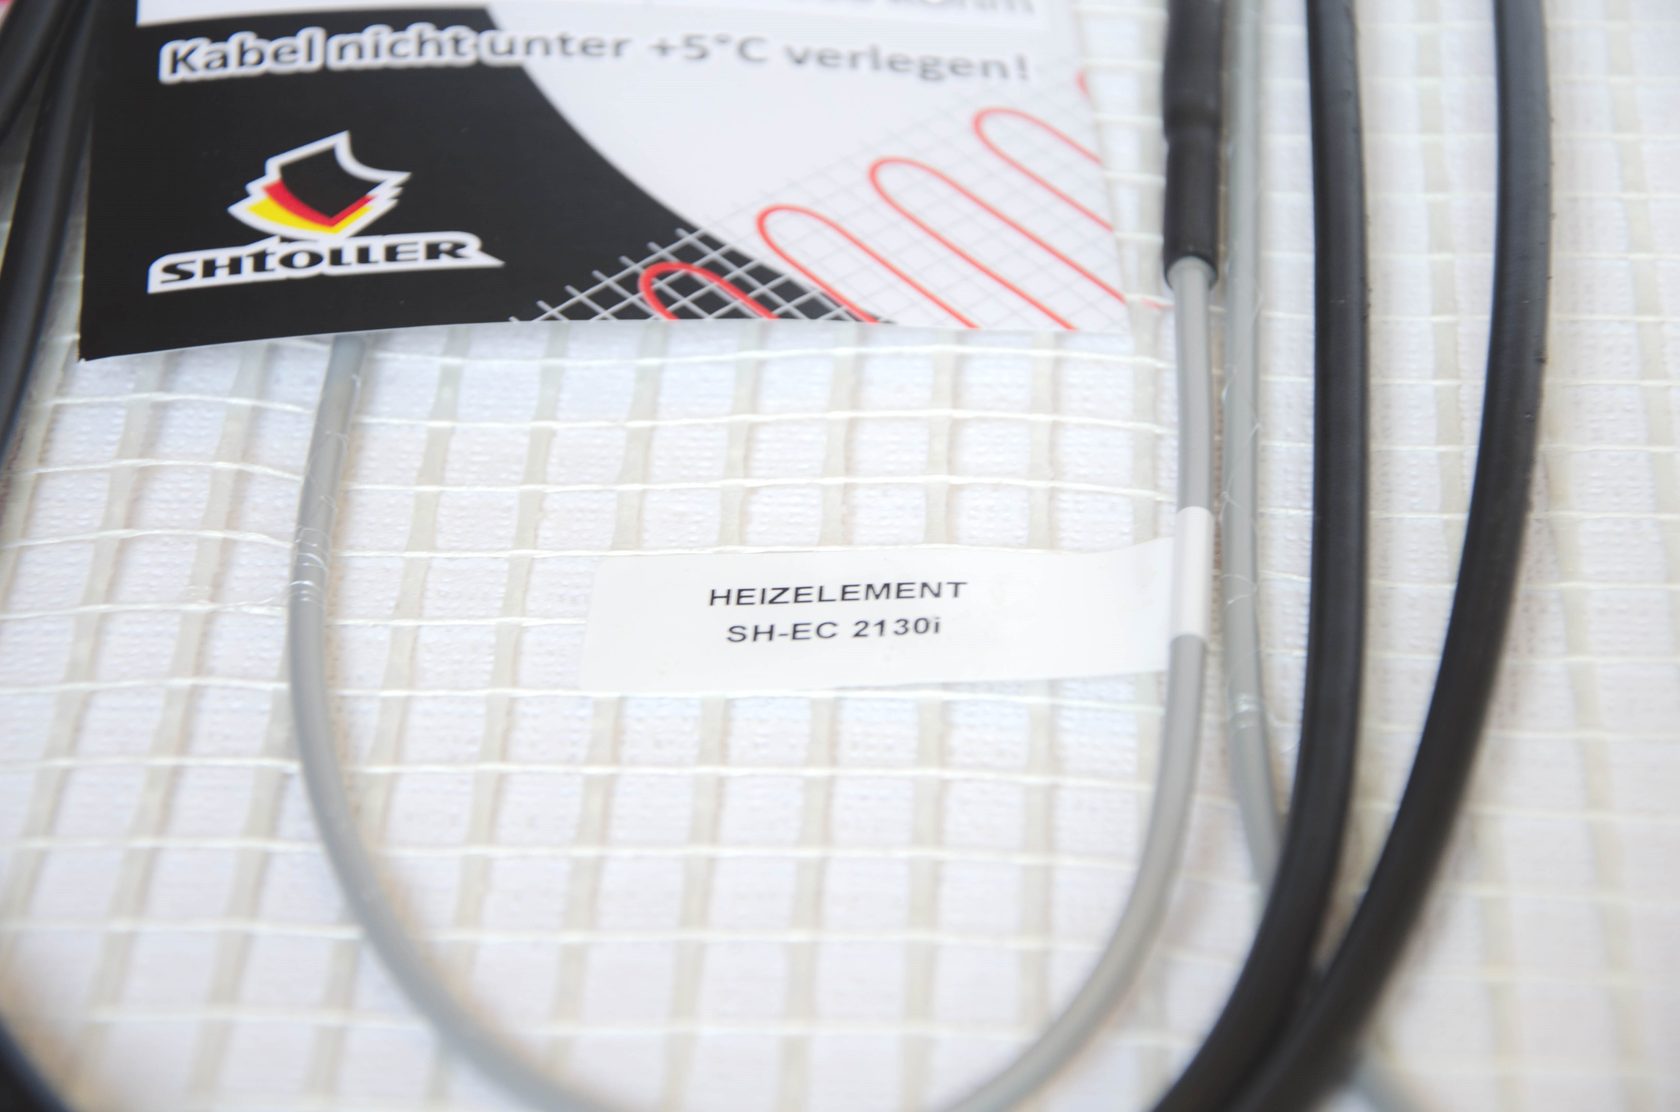 Електрична тепла підлога Shtoller SH-EC 2150i відгуки - зображення 5